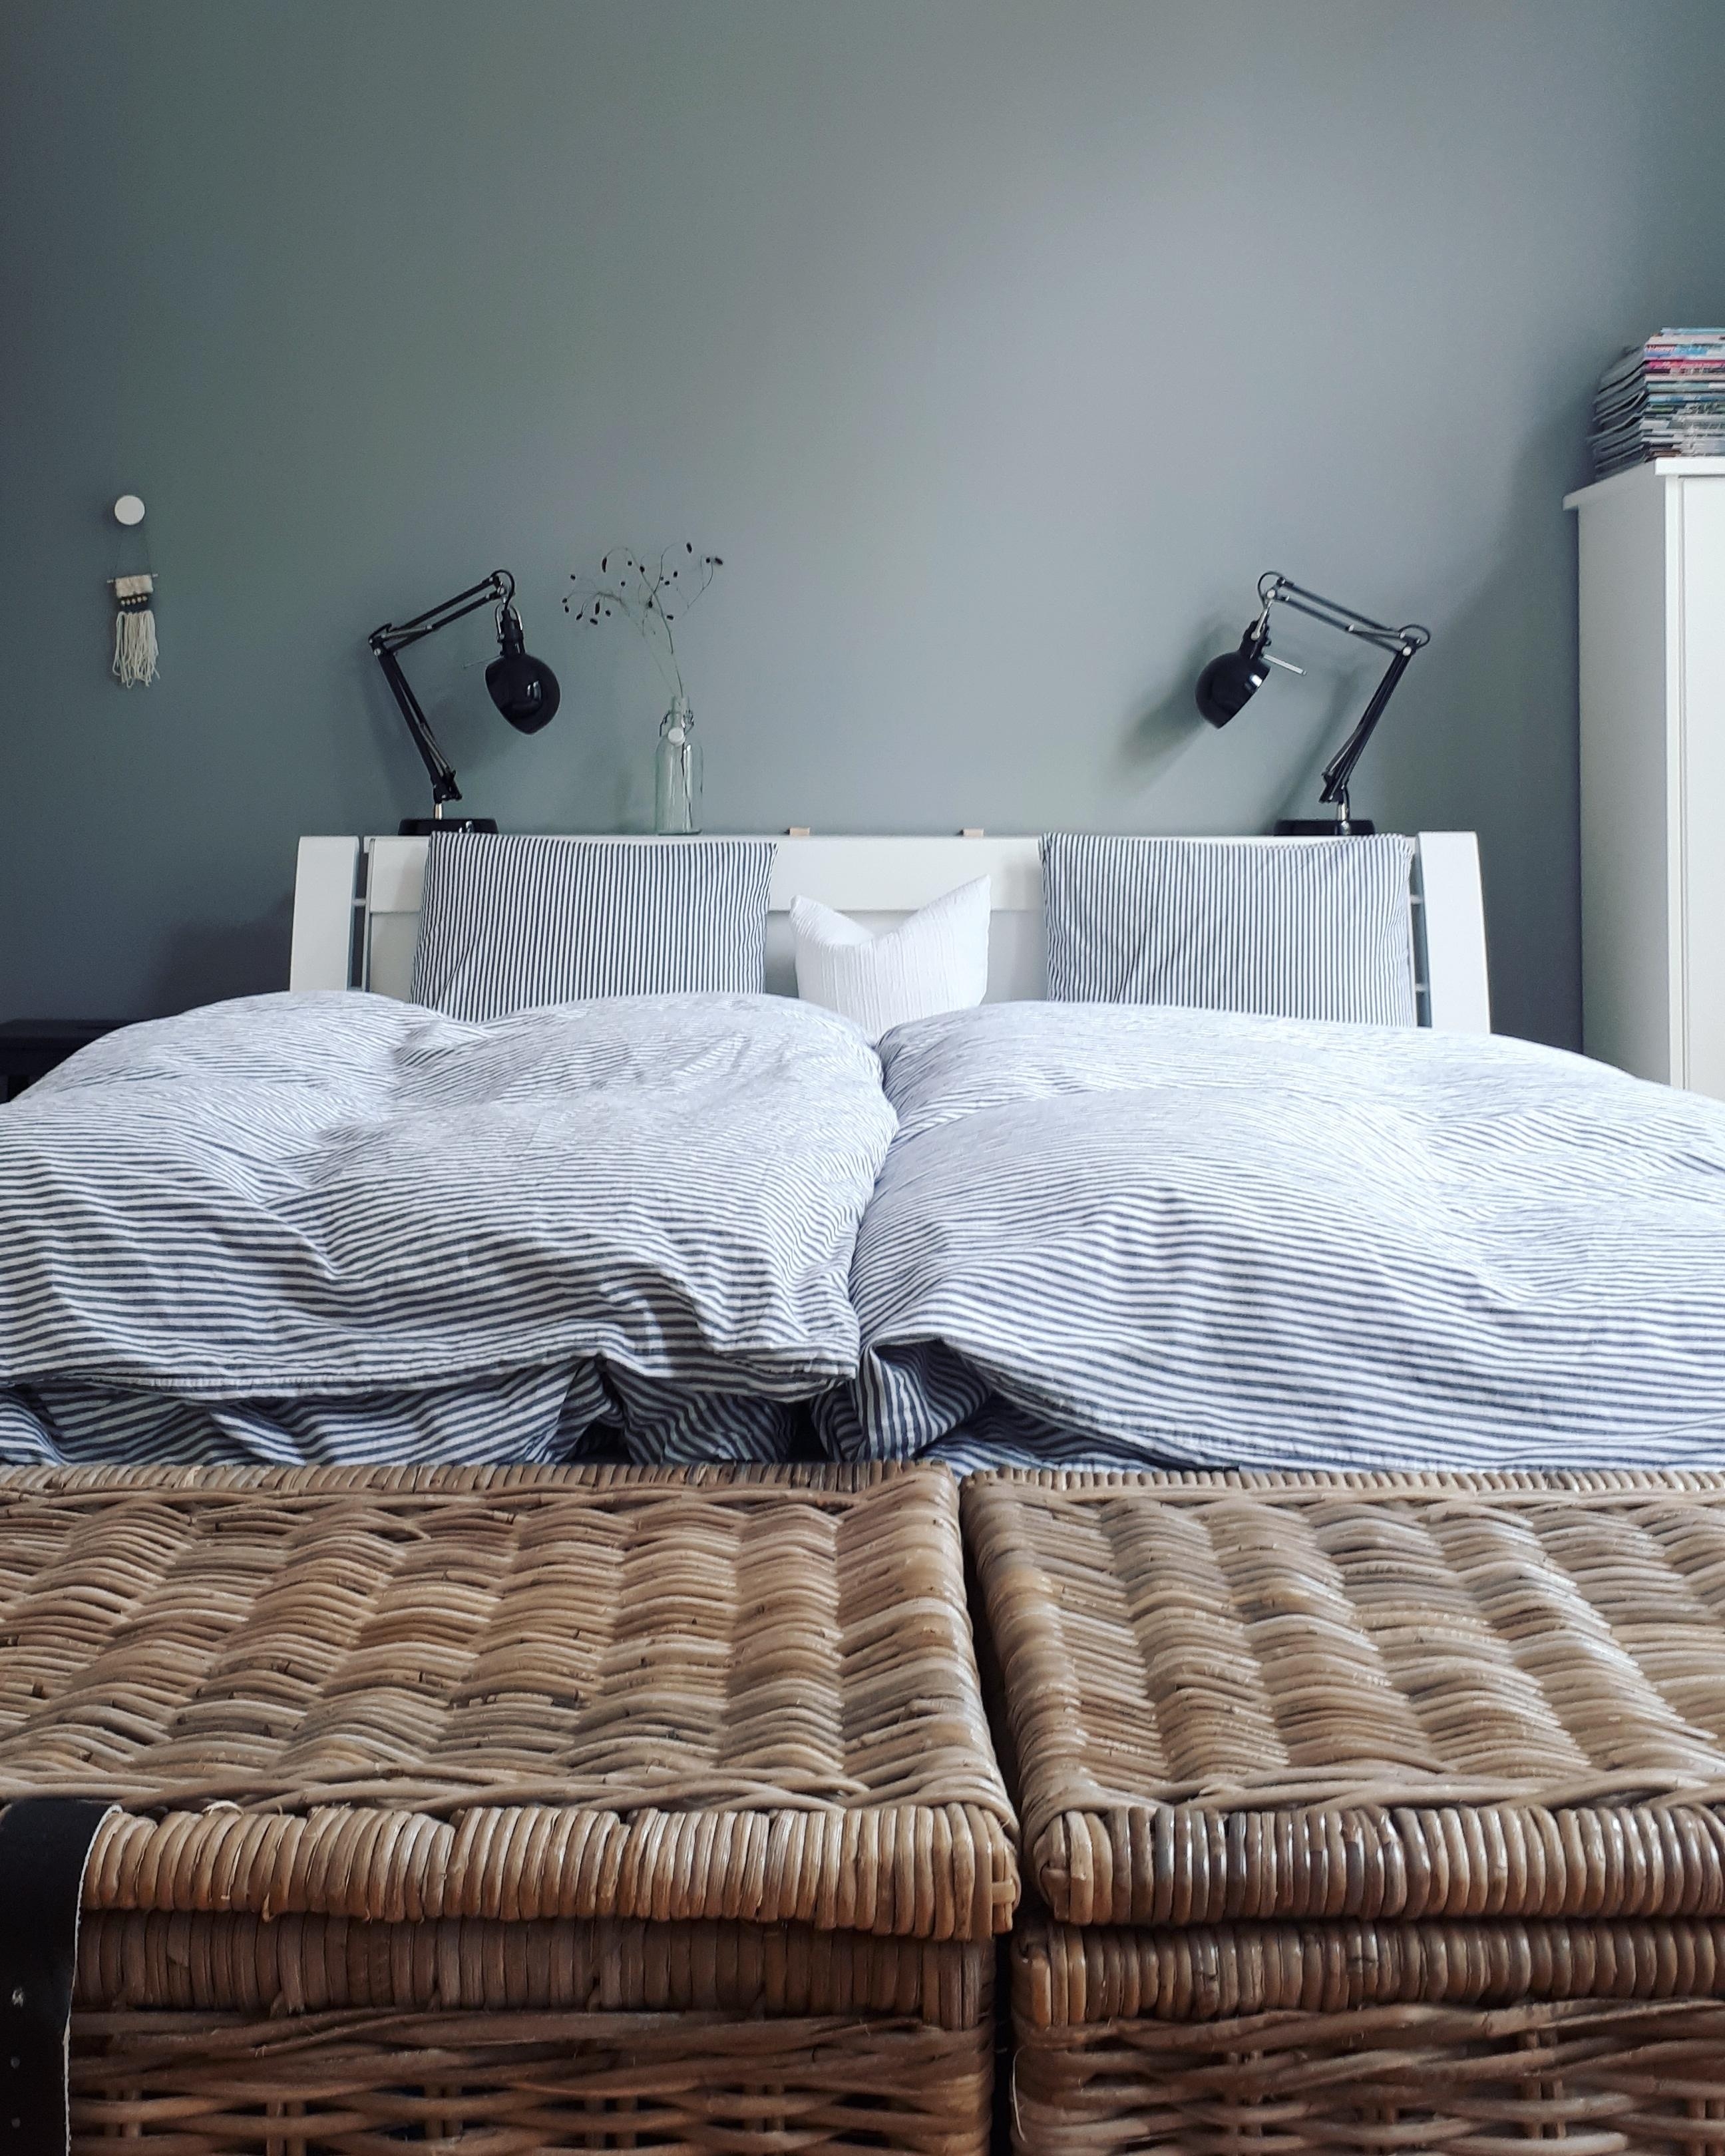 Ein graues Schlafzimmer an einem grauen Tag ☁️ #grau #schlafzimmer #altbau #altbauliebe #webteppich #diy